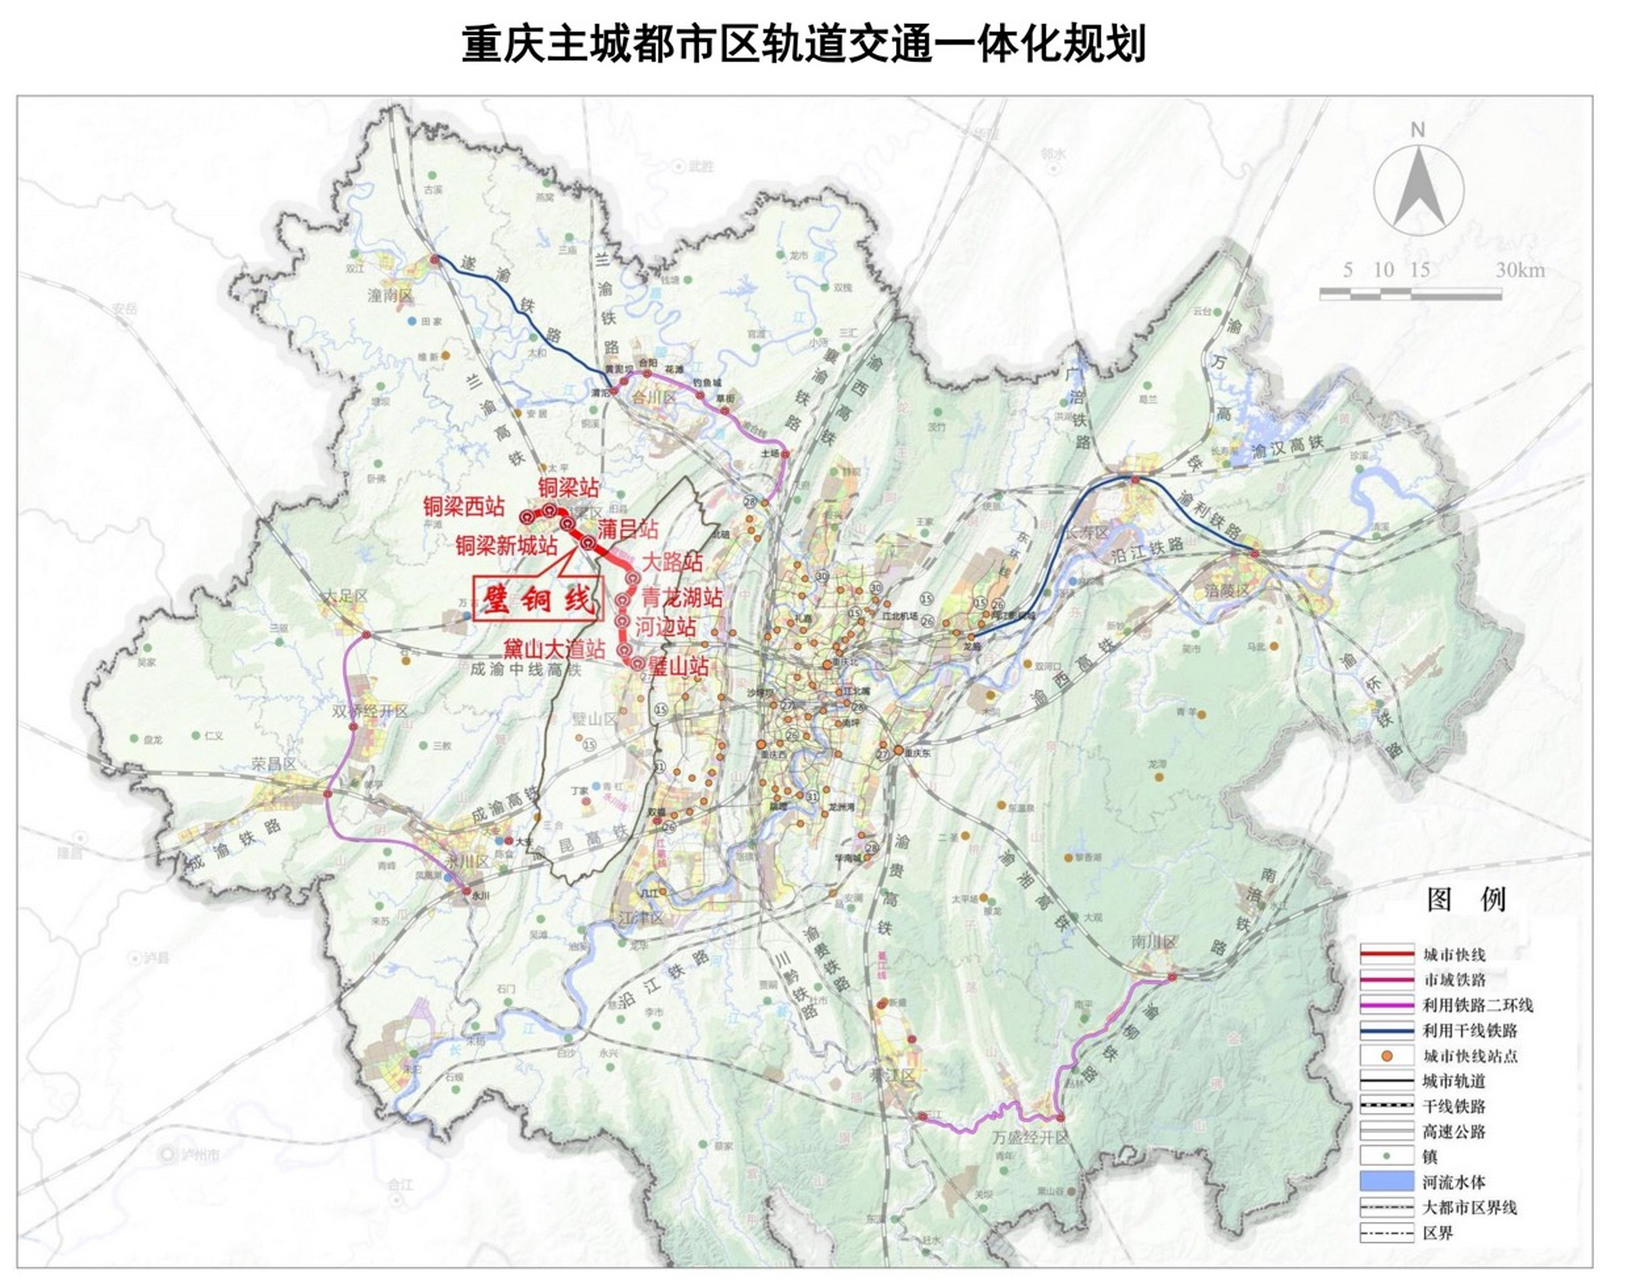 来自网友发布的璧山至铜梁的都市快轨线规划图,可以看出有璧山站,河边